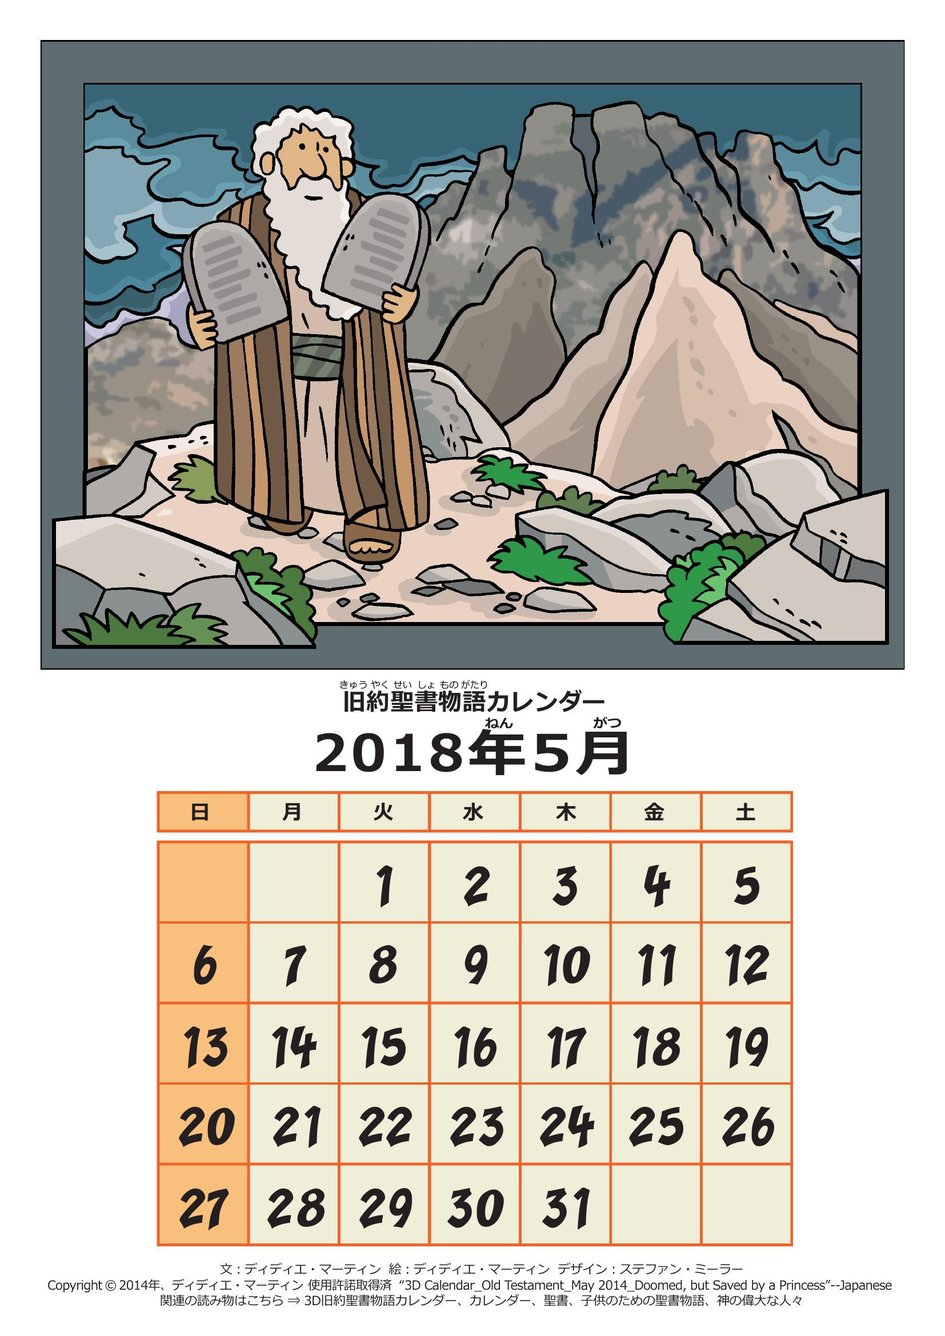 Coloring Page 3d Calendar Old Testament May 14 マイ ワンダー スタジオ